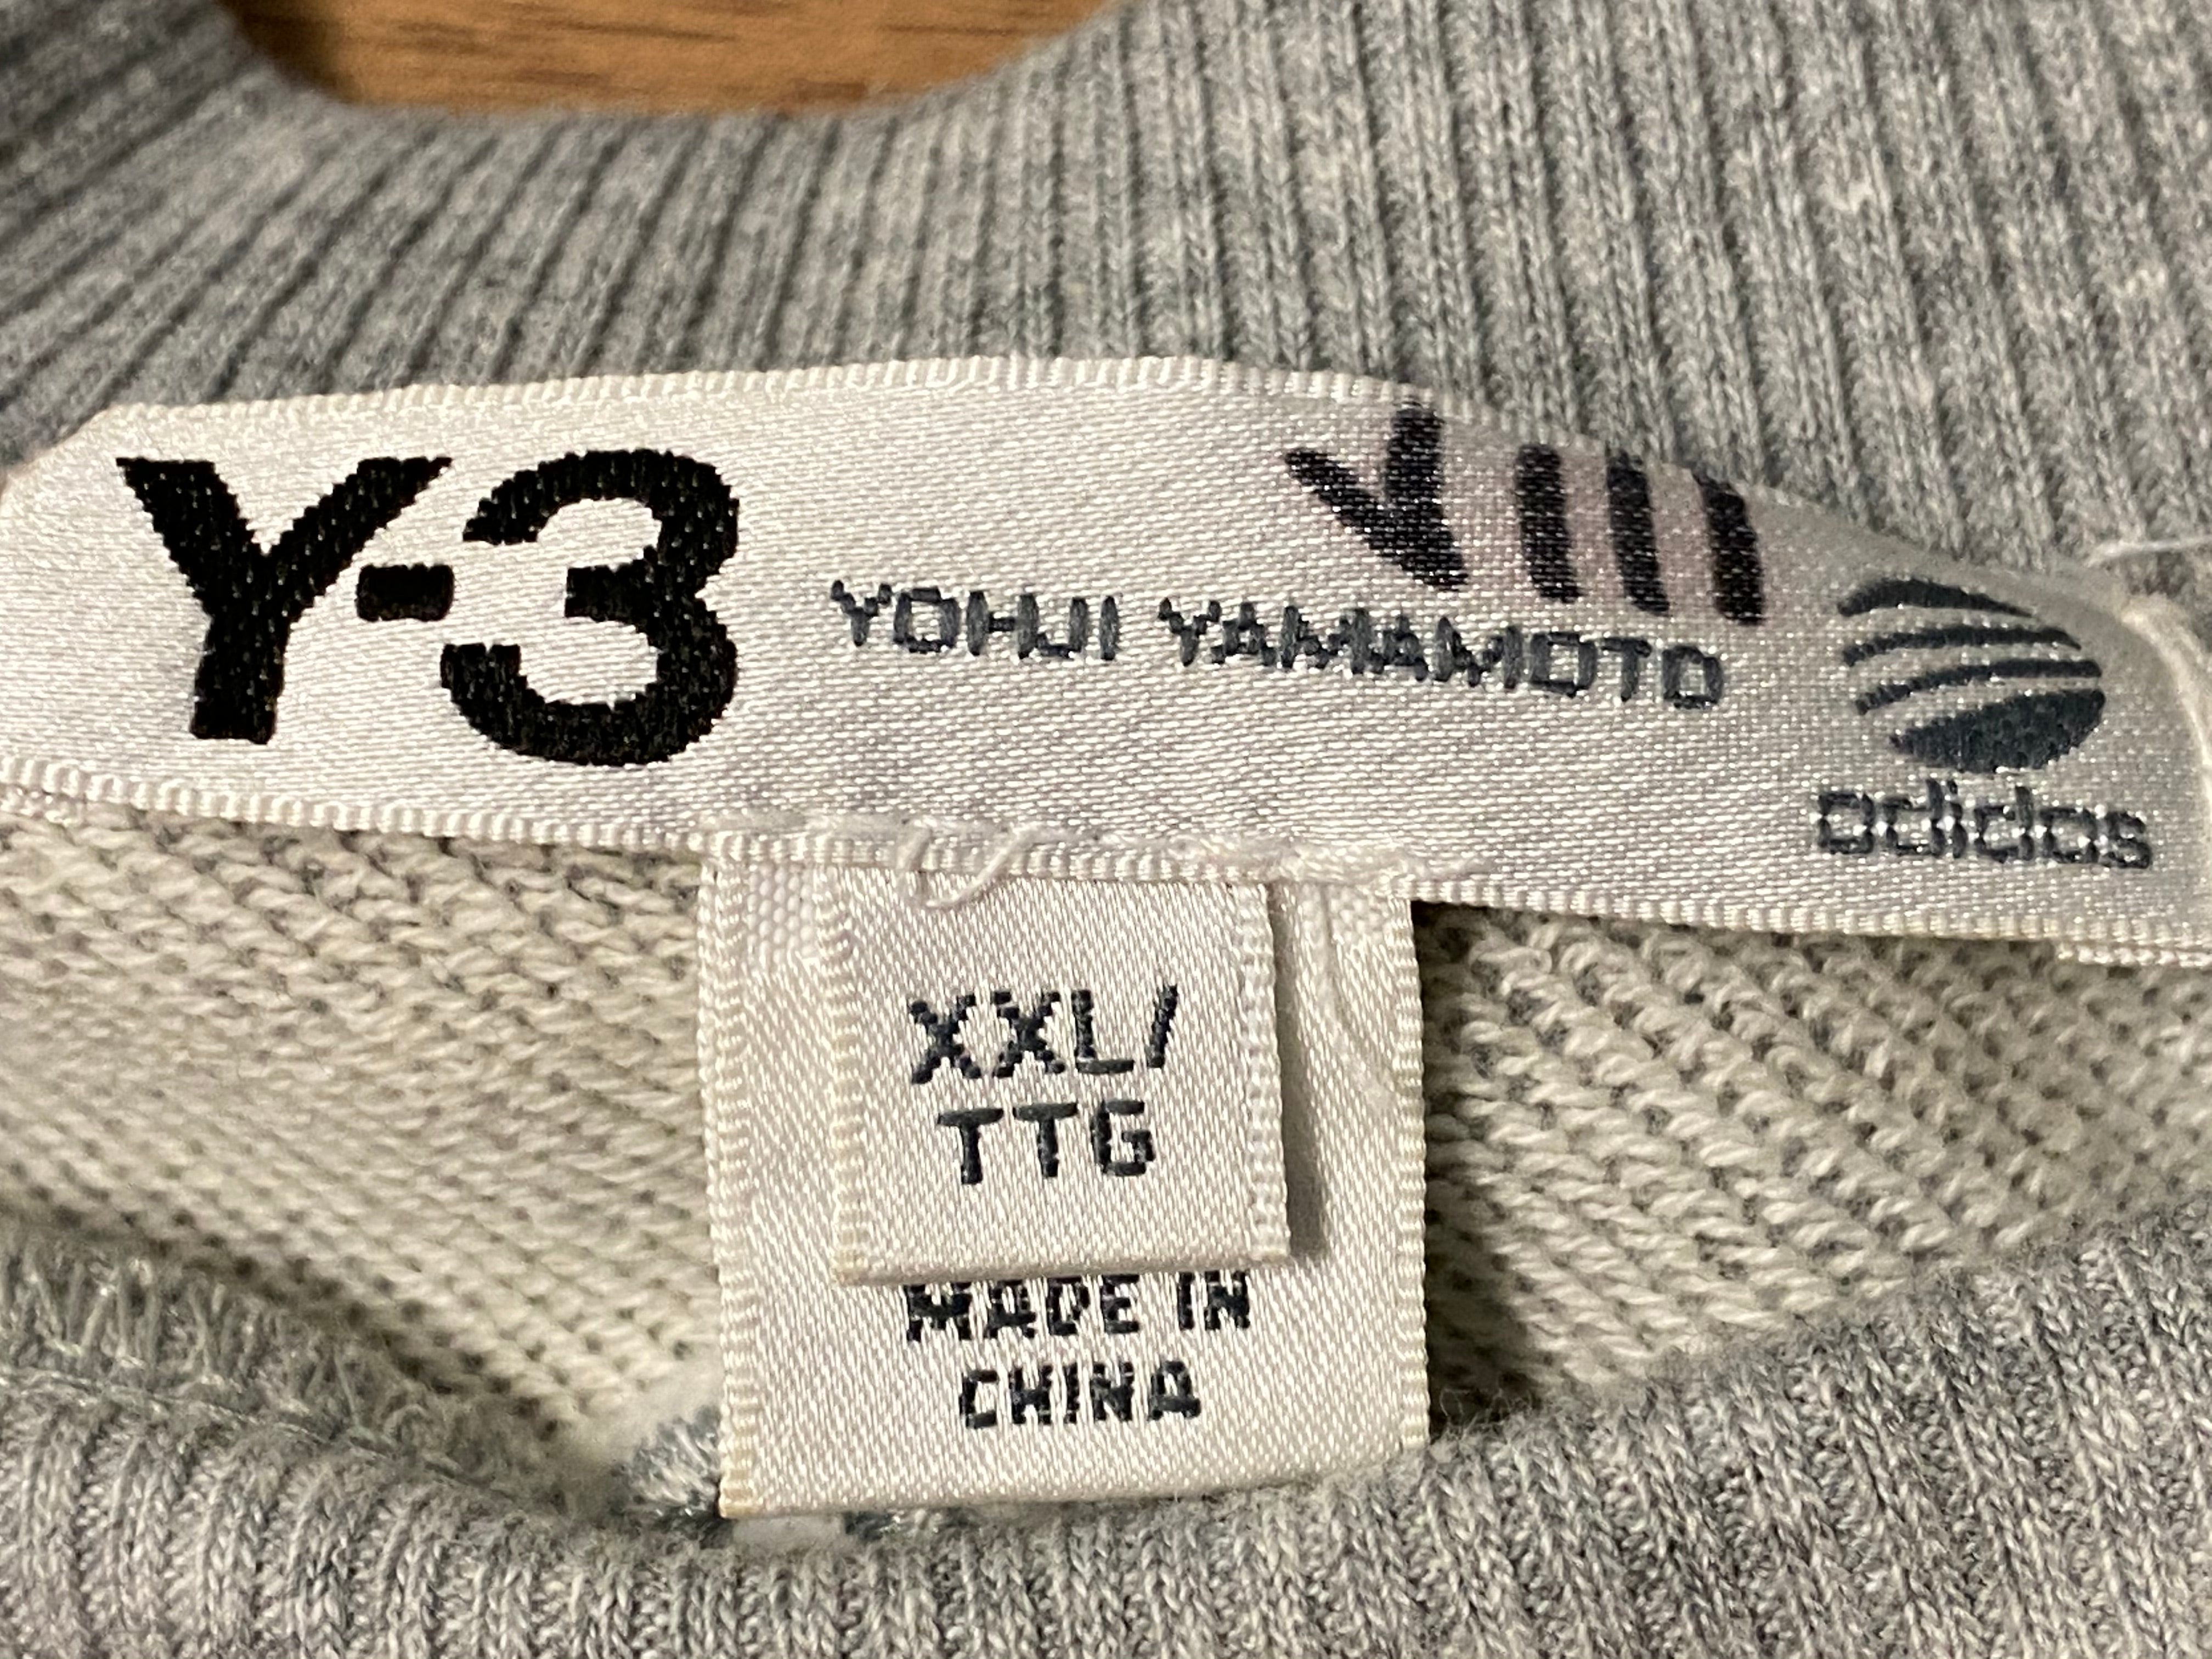 Y-3 Teddy Bear Graphic Sweatshirt - Grey